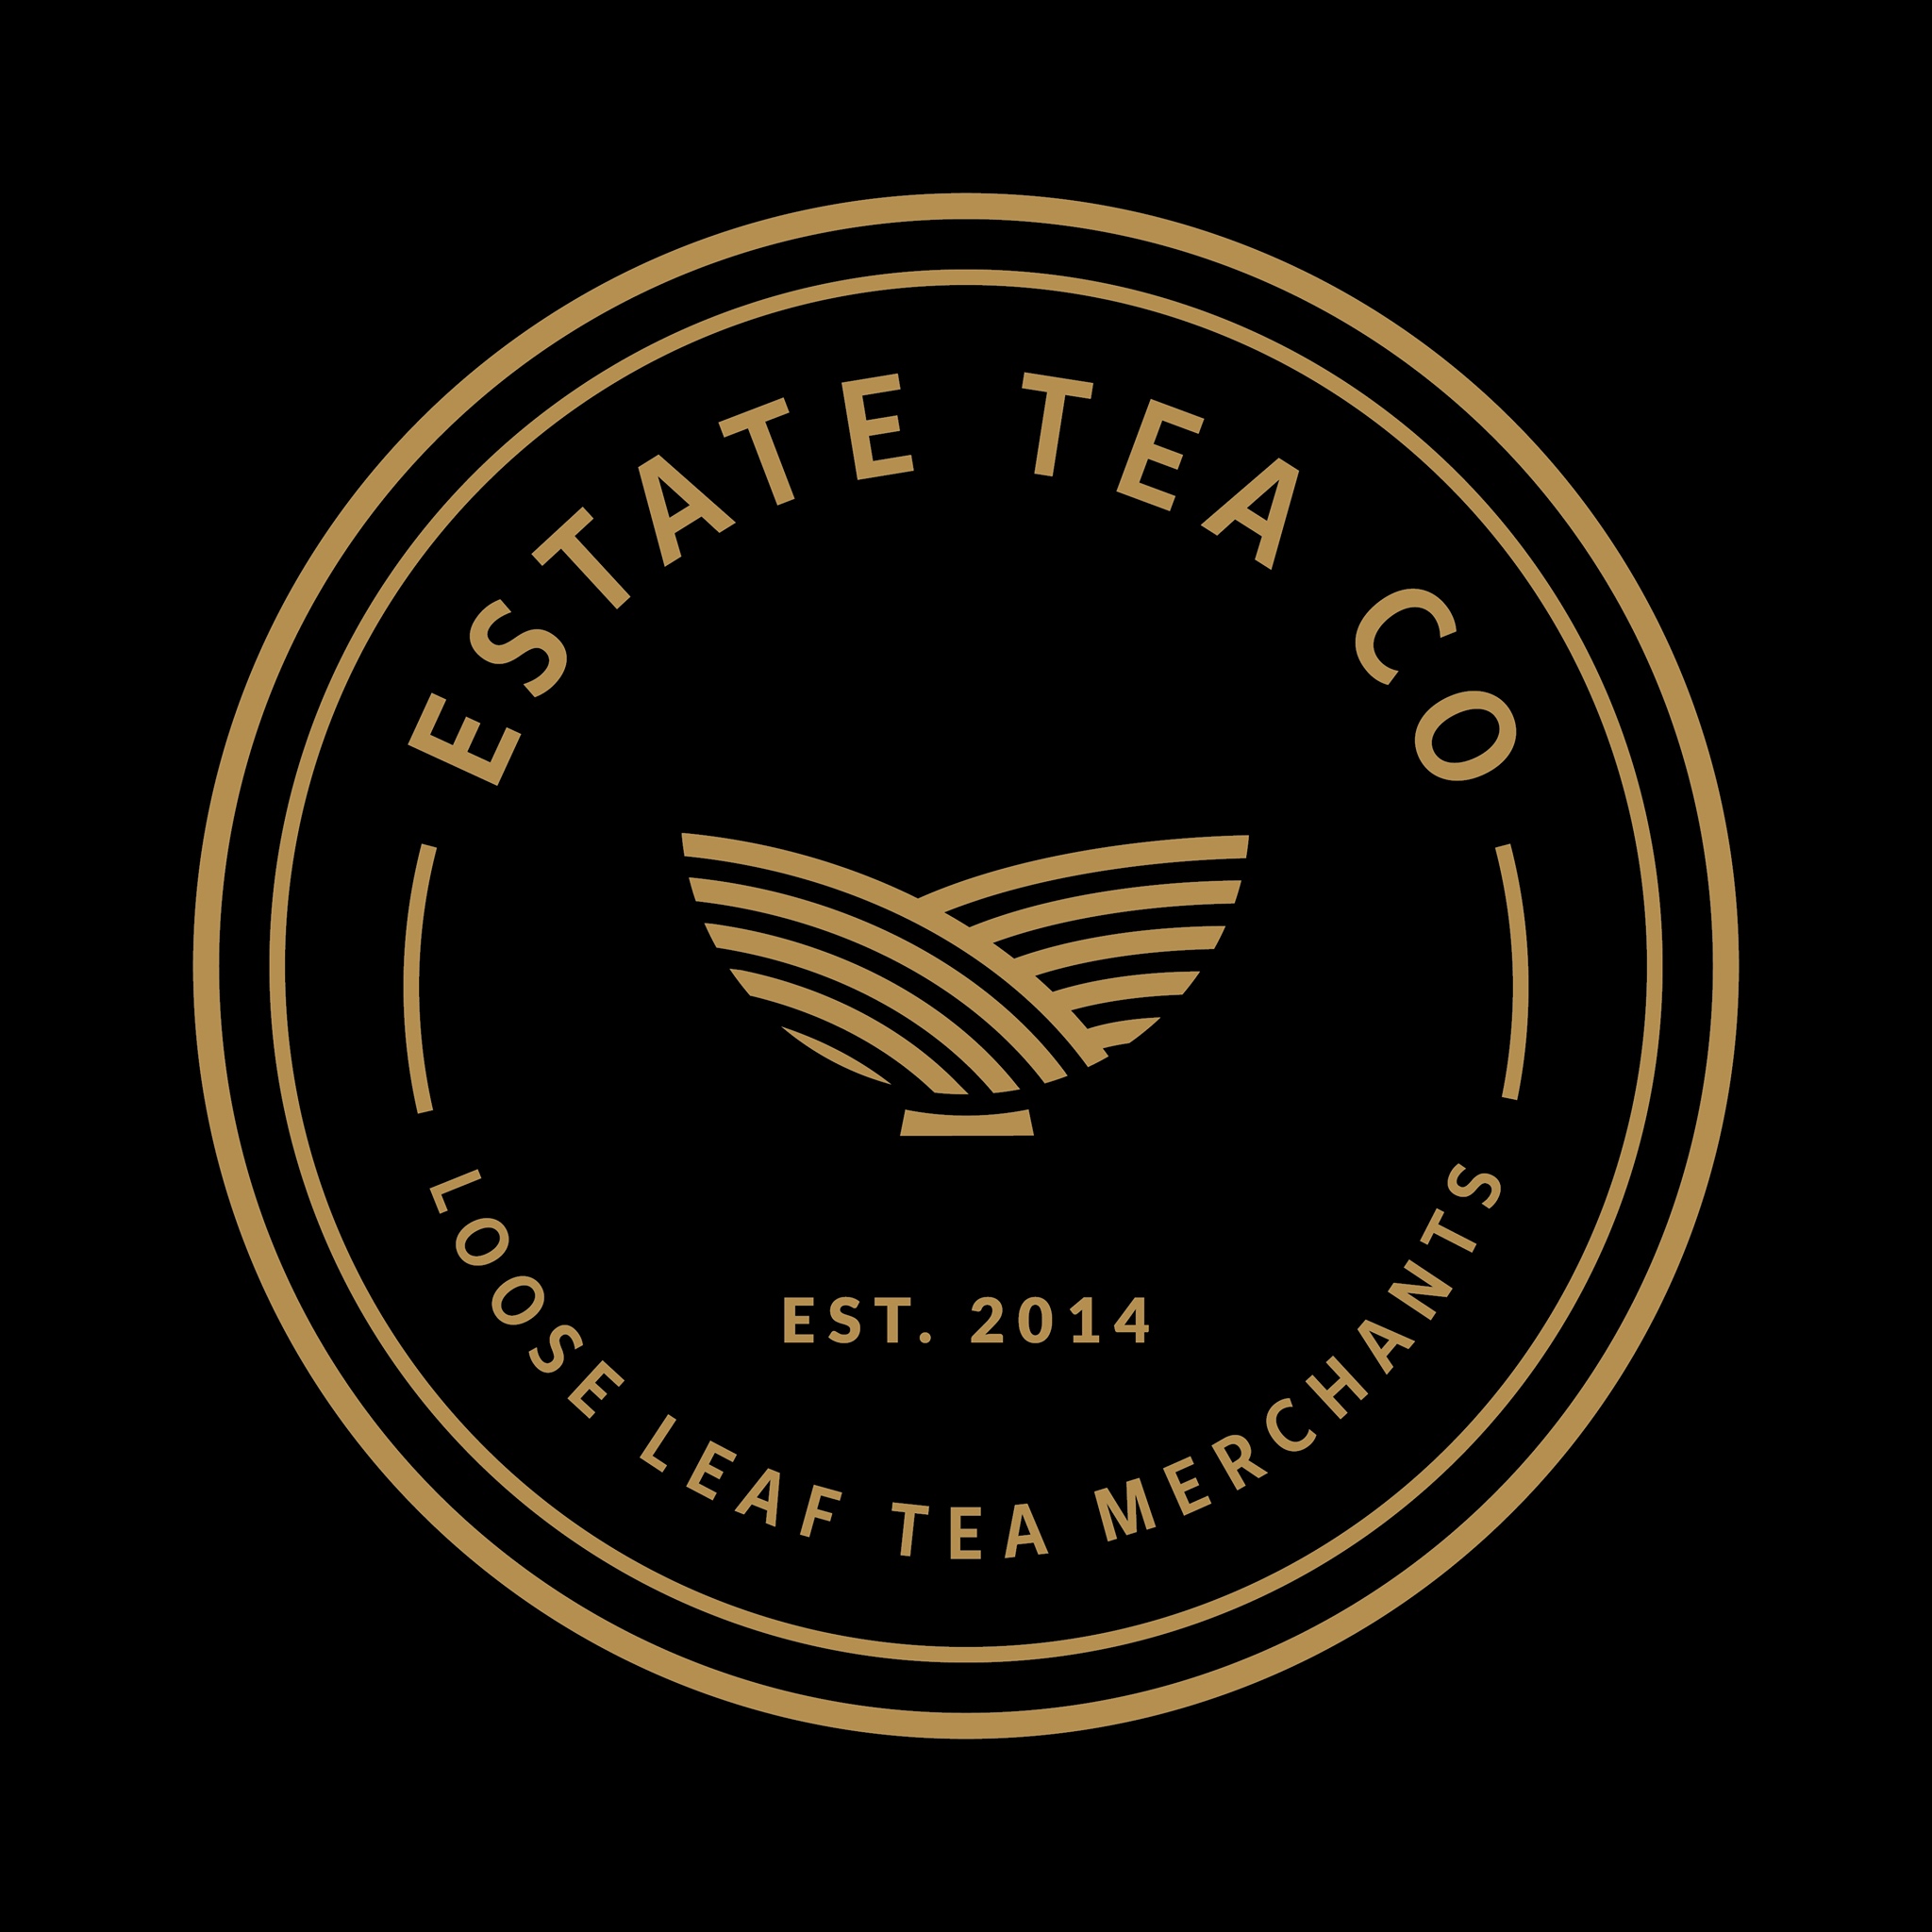 Estate Tea Co